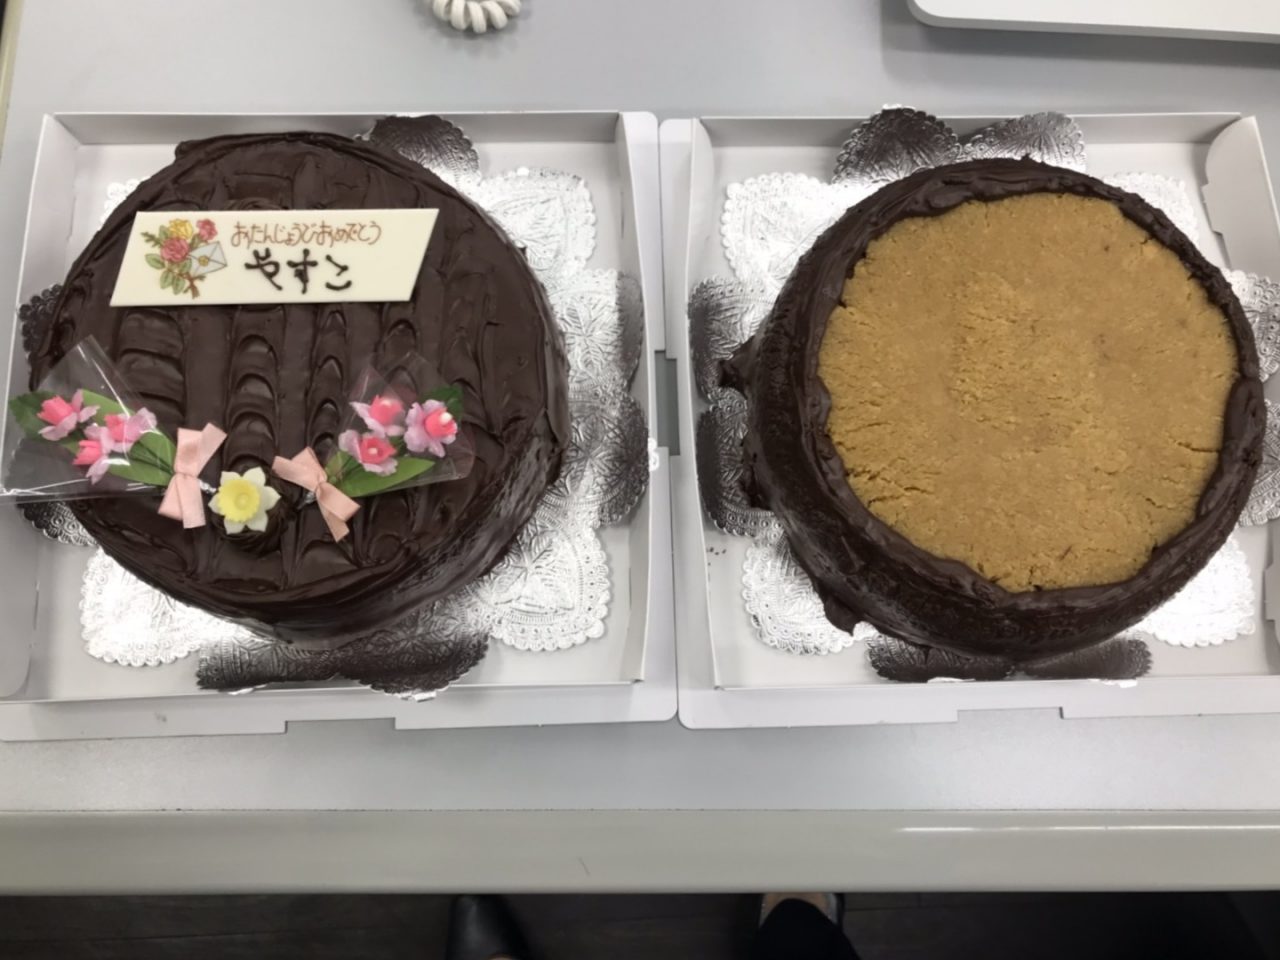 8月誕生日 大好きなアロハのケーキ 沖縄のカーコーティング カーフィルム キズヘコミはザップスへ 沖縄 カーケアショップザップス